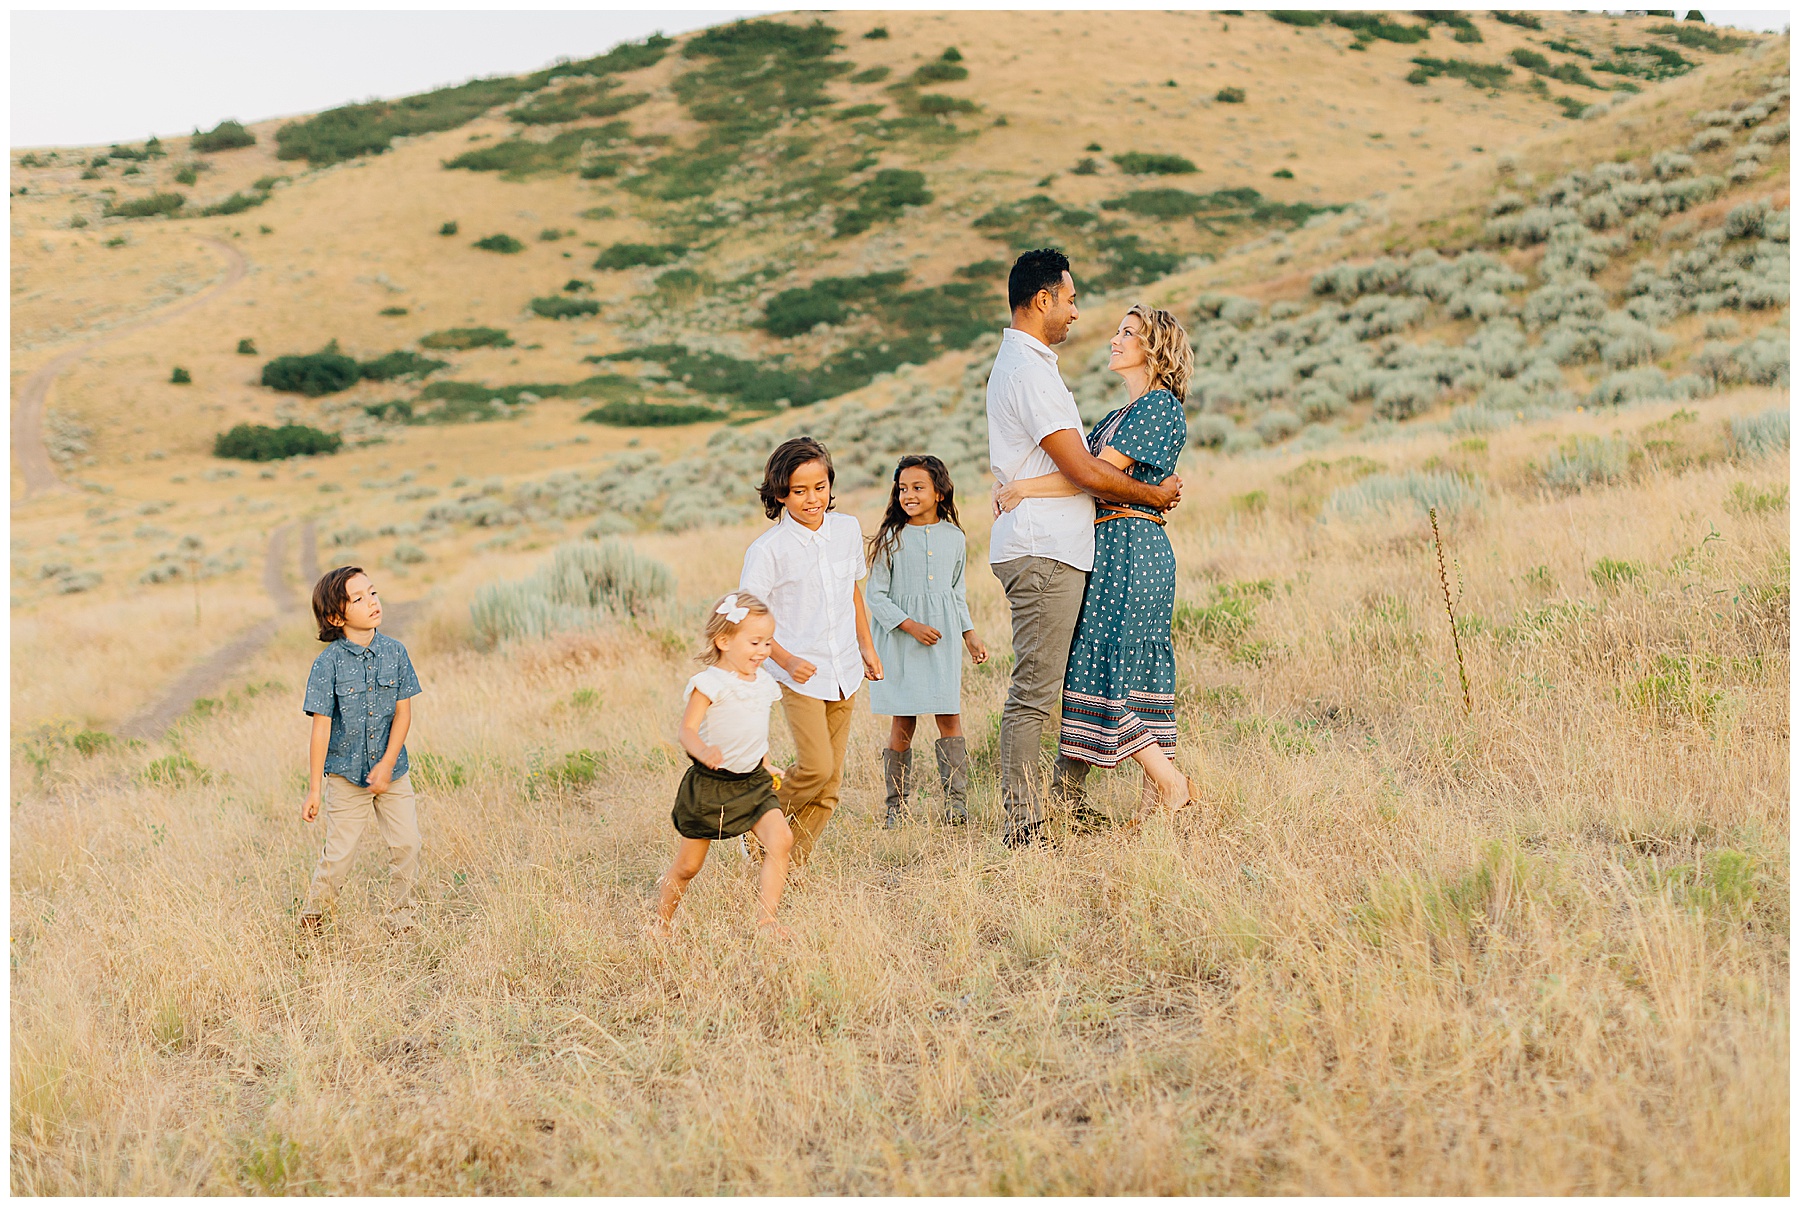 Fall Family Pictures Utah | Racule Family